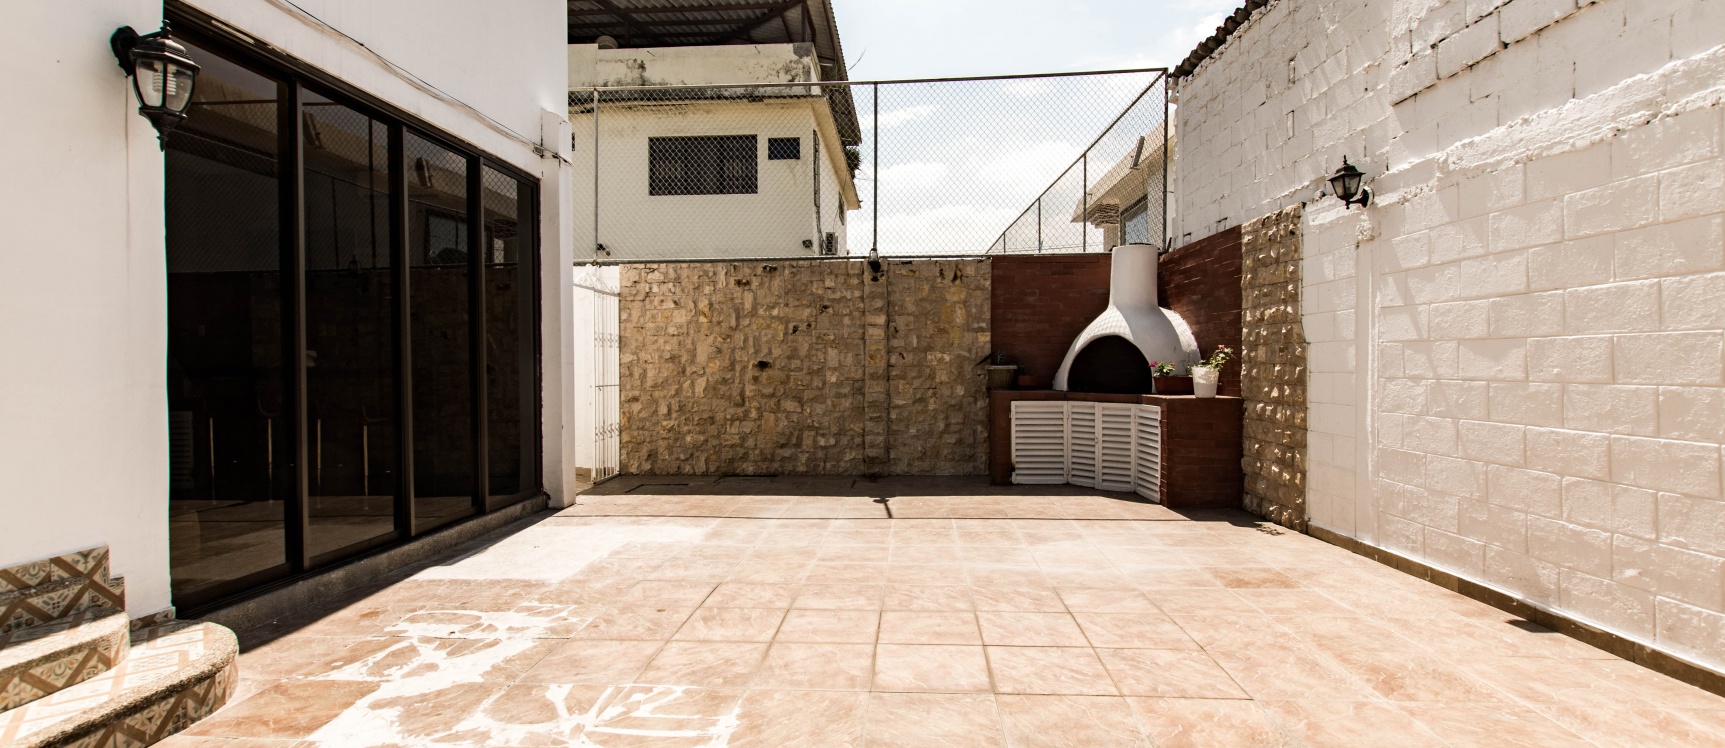 GeoBienes - Departamento planta baja de 3 habitaciones en venta, Ceibos, Santa Cecilia - Plusvalia Guayaquil Casas de venta y alquiler Inmobiliaria Ecuador